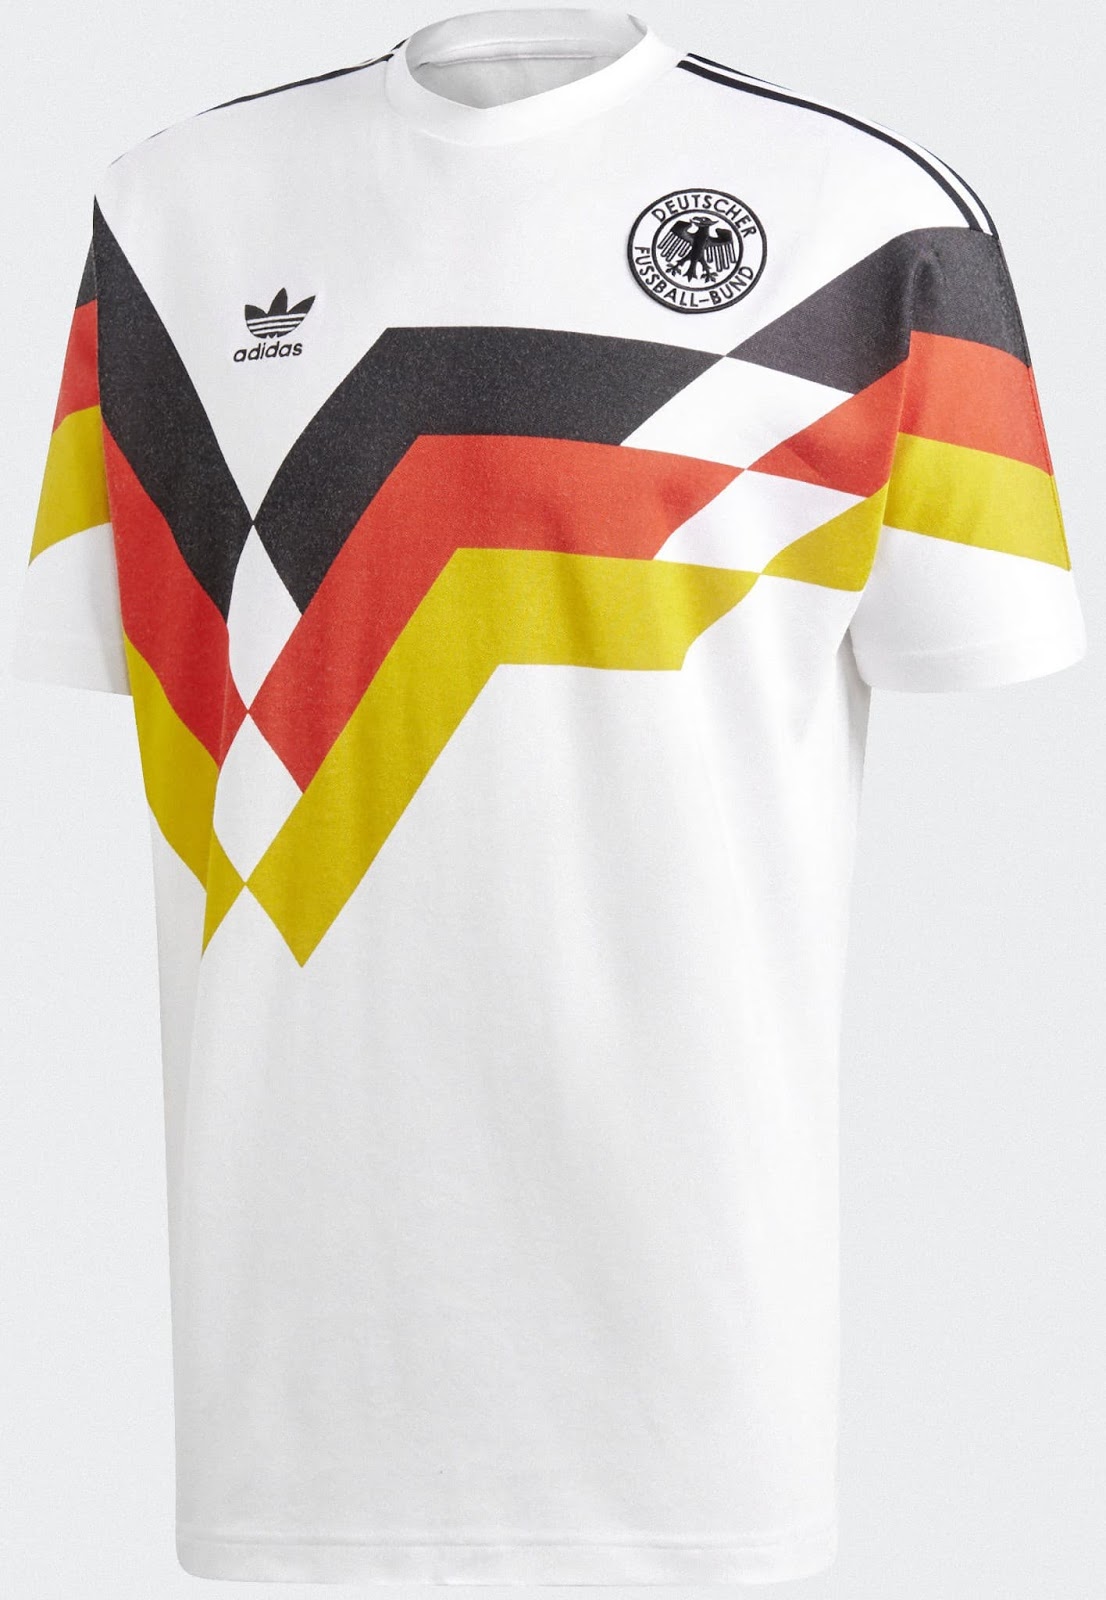 ドイツ代表 1990 アディダスオリジナルスユニフォーム ユニ11